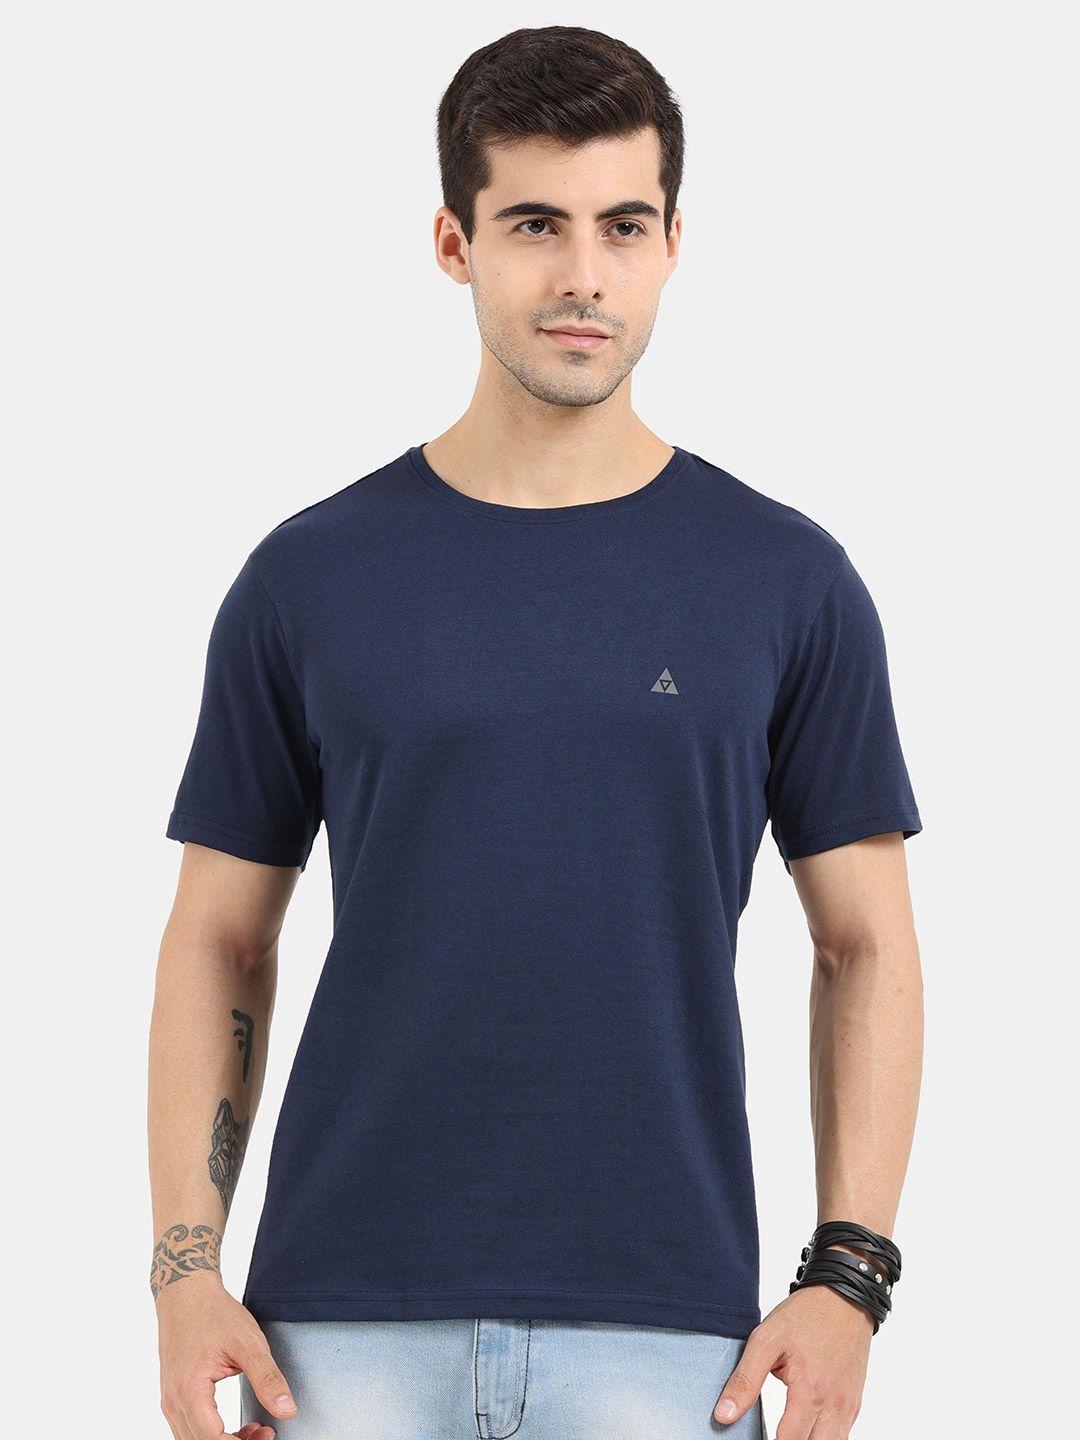 ardeur men navy blue slim fit t-shirt